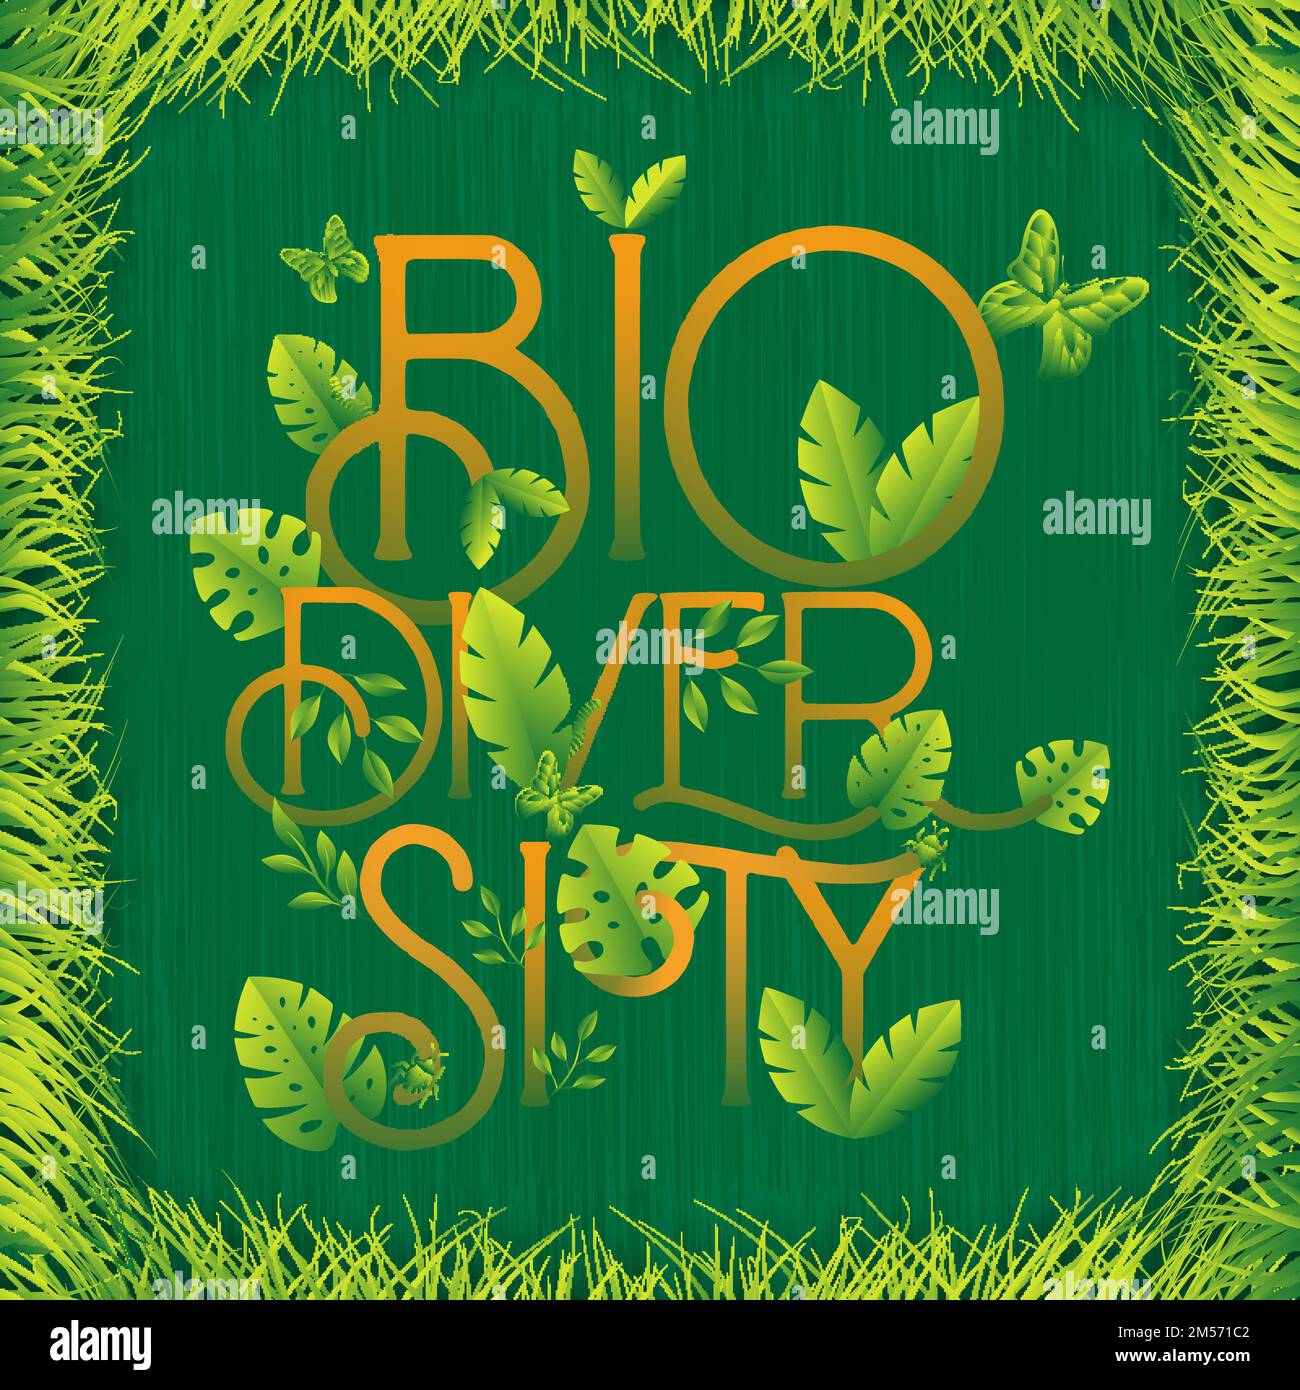 Biodiversität Text Zitat Zeichen aus verschiedenen grünen Pflanzenblättern. Naturpflegekonzept, Wildlife-Conservation-Design in flacher Cartoon-Stil. Stock Vektor